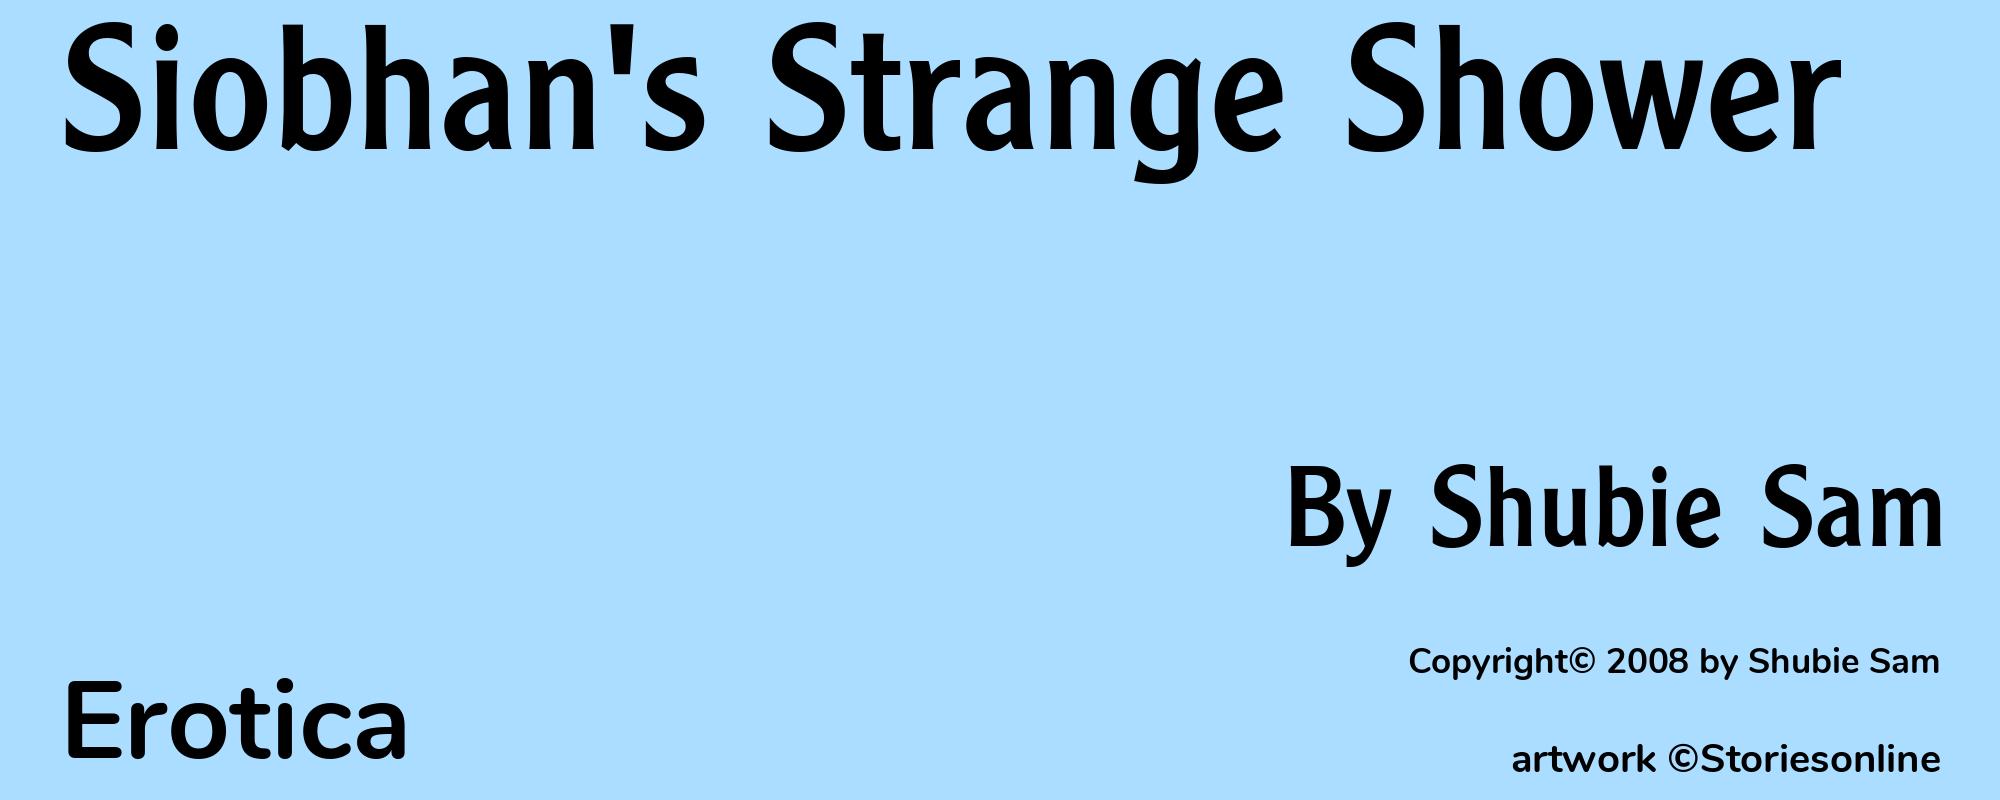 Siobhan's Strange Shower - Cover